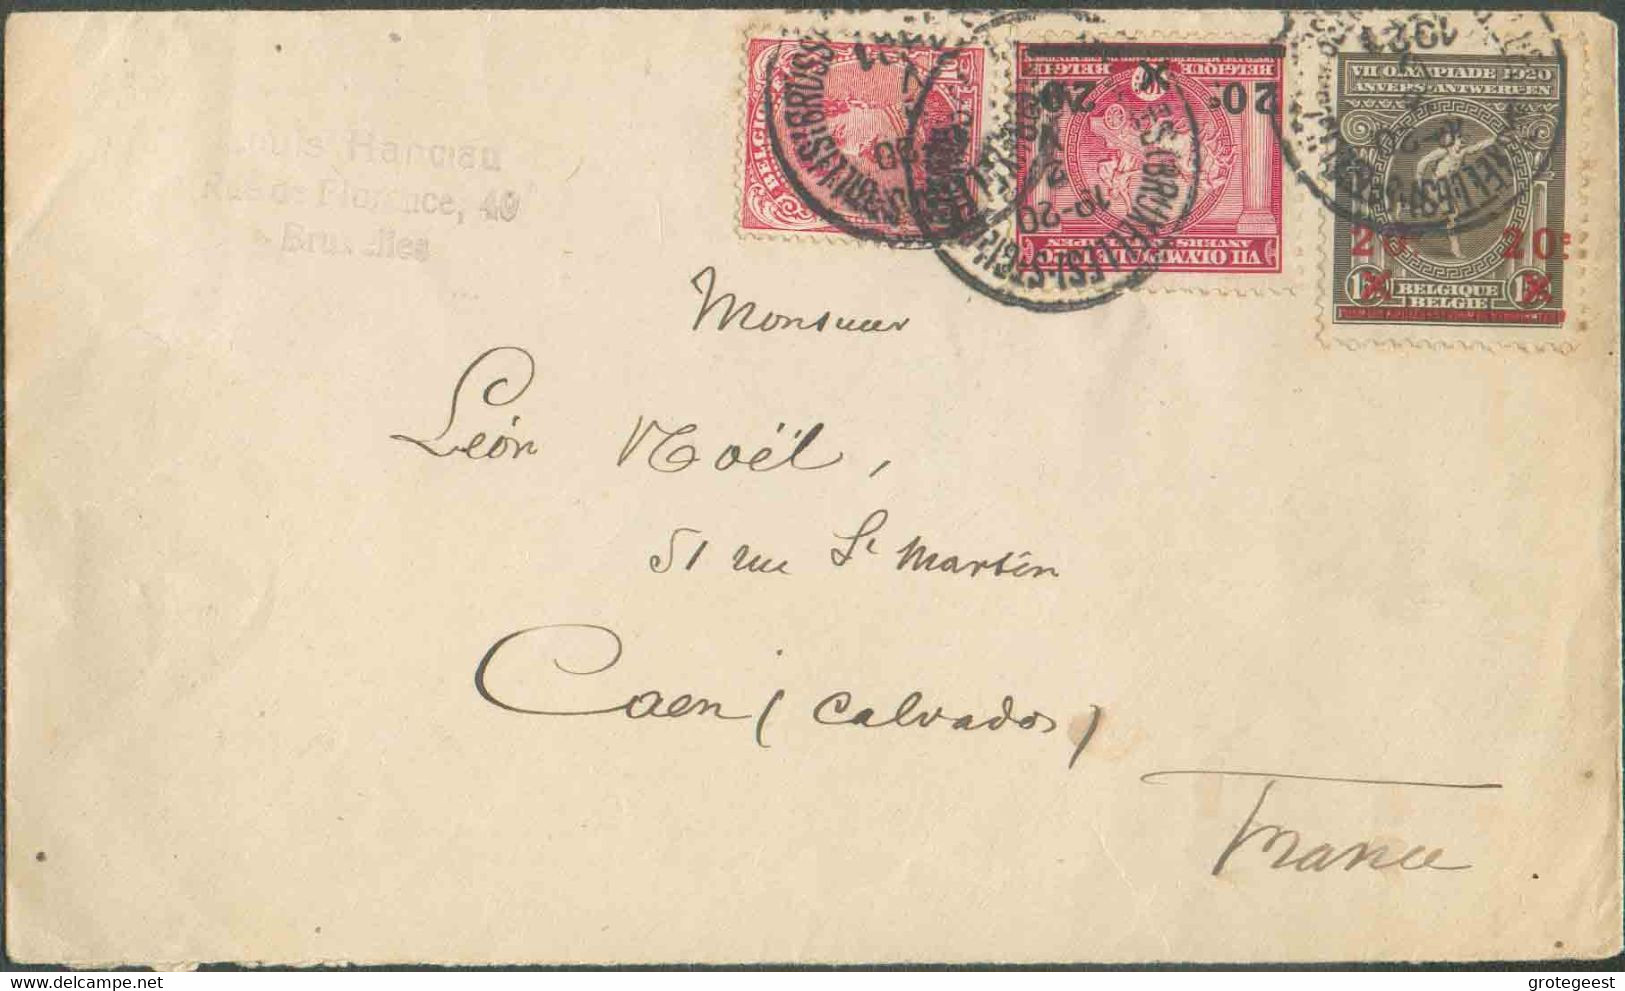 BELGIUM N°138-185/6 - Affr. Combiné à 50 Centimes Obl. Sc St-GILLES (BRUXELLES) s/L. Du 2-V-1921 Vers Caen. - TB - 17309 - Summer 1920: Antwerp